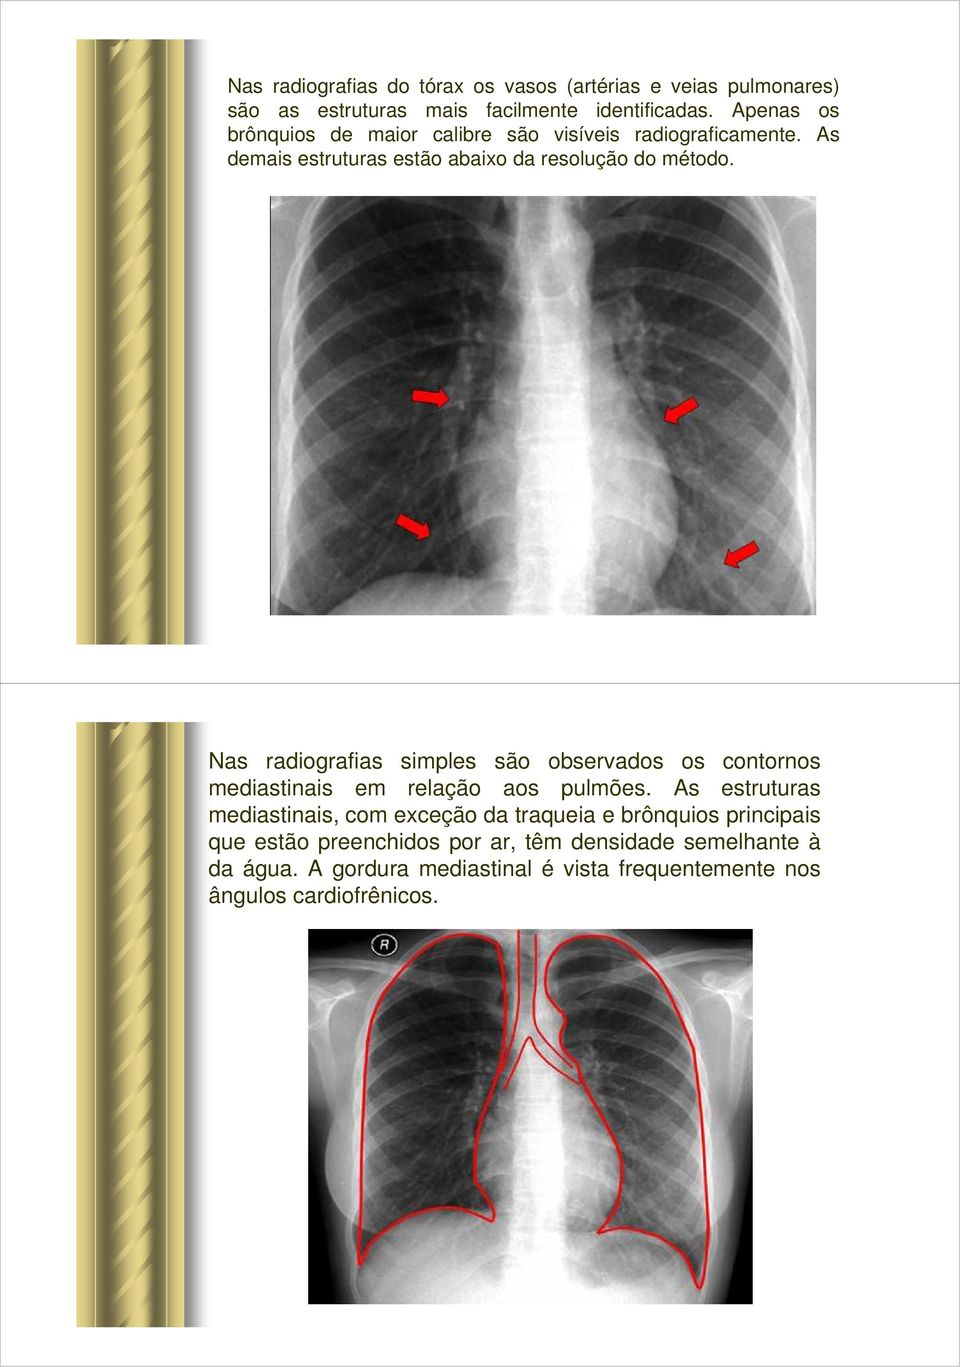 Nas radiografias simples são observados os contornos mediastinais em relação aos pulmões.